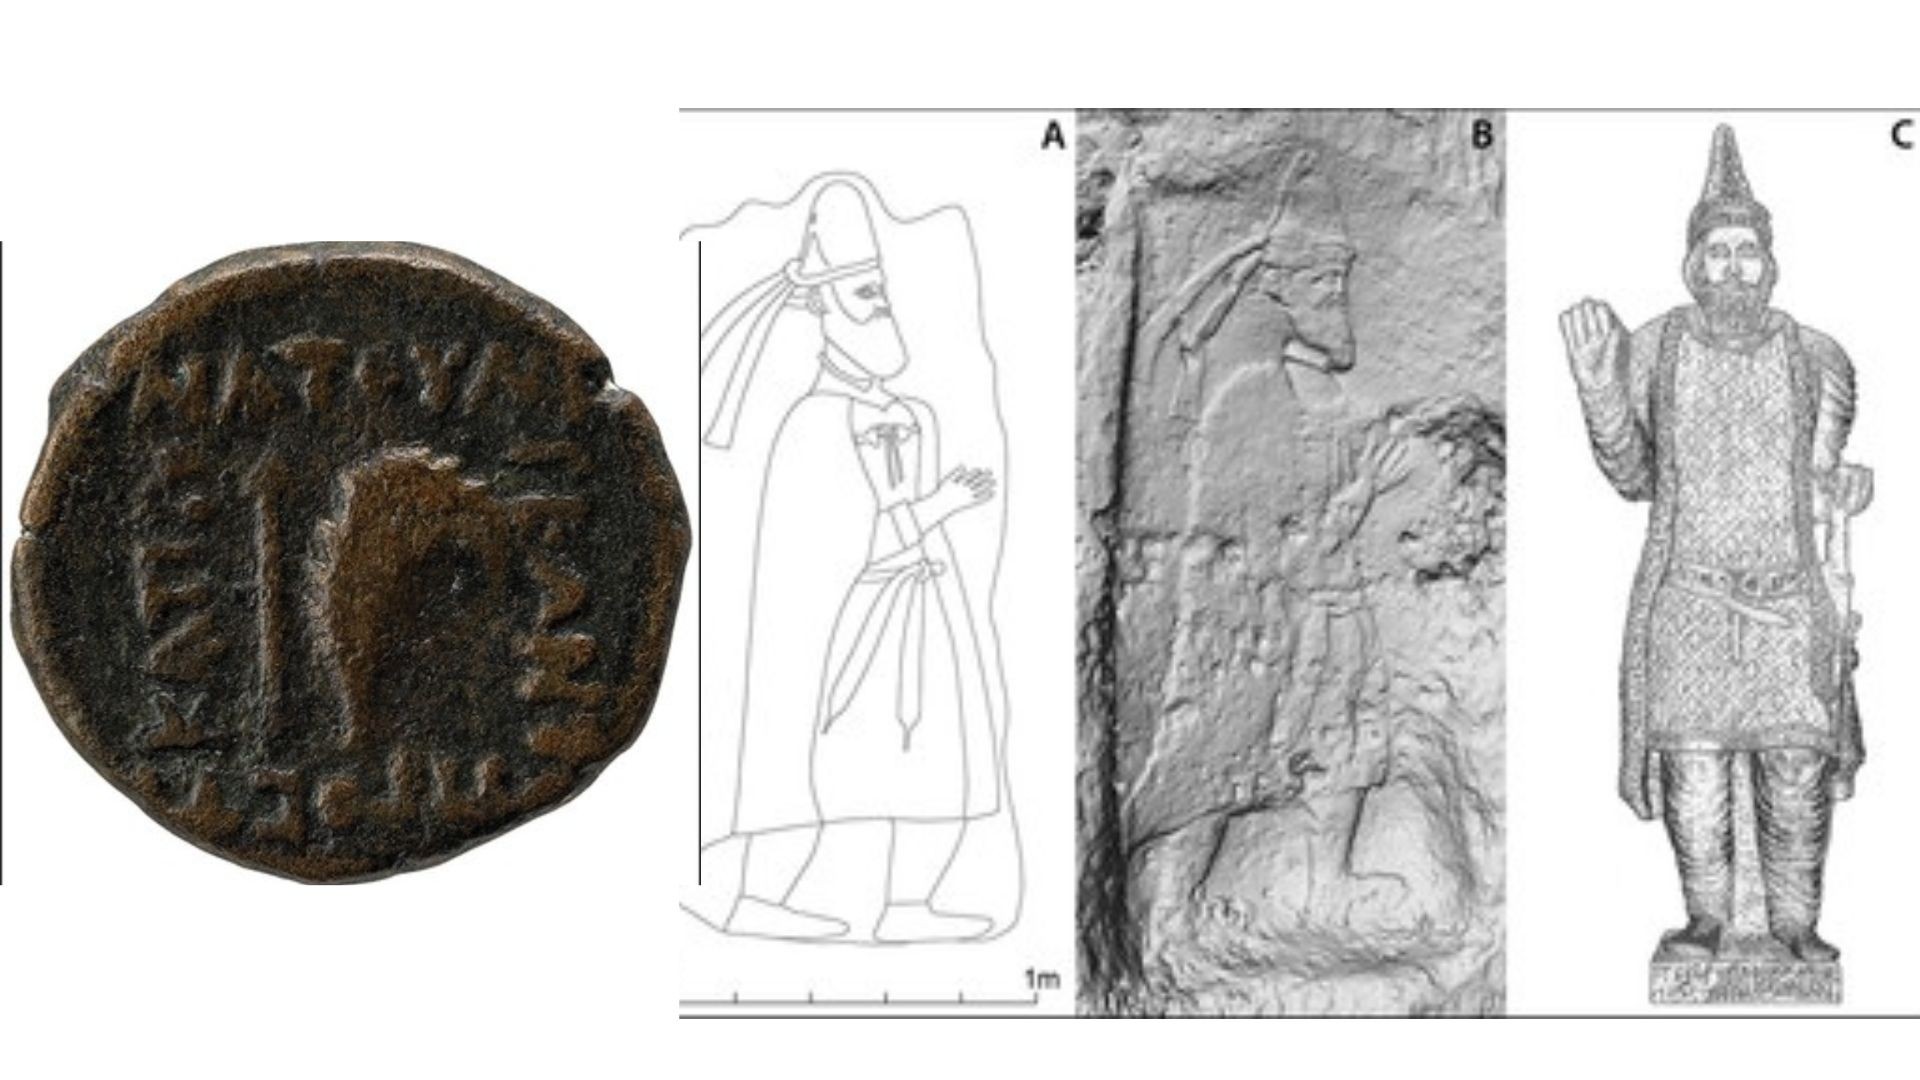 Moeda de Natounia descoberta nas escavações e desenho de rei em pedra (Foto: Rabana-Merquly Archaeological Project/The Trustees of the British Museum)